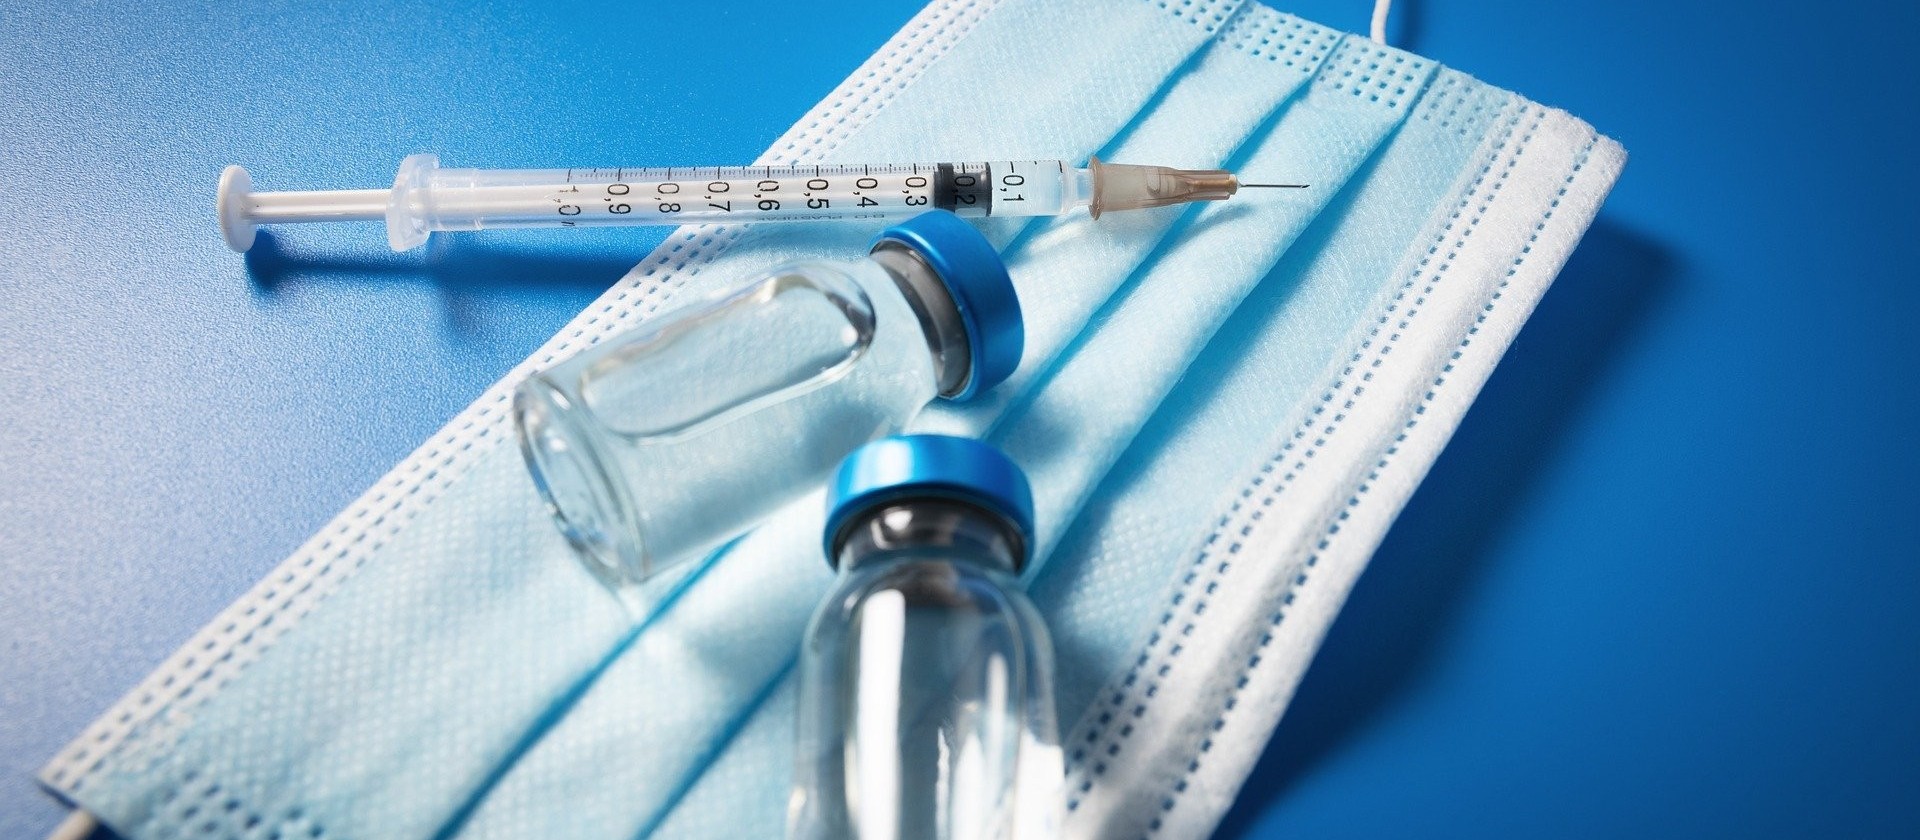 Cascavel ultrapassa a marca de meio milhão de vacinas aplicadas contra a Covid-19